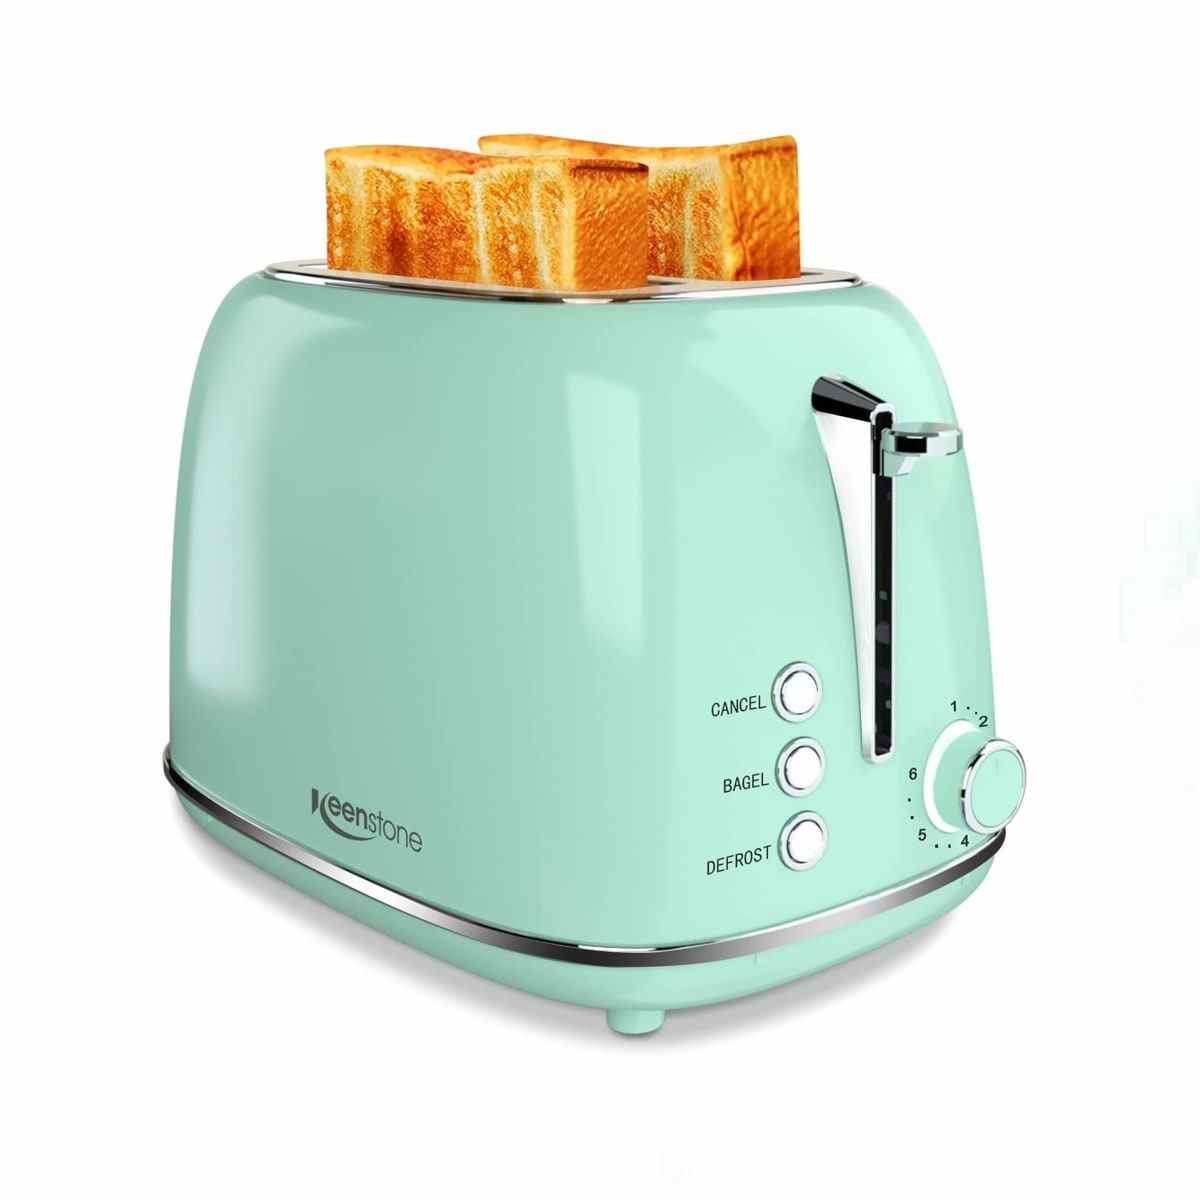 Mintgrüner Keenstone Toaster 2-Scheiben-Edelstahl-Toaster auf weißem Hintergrund